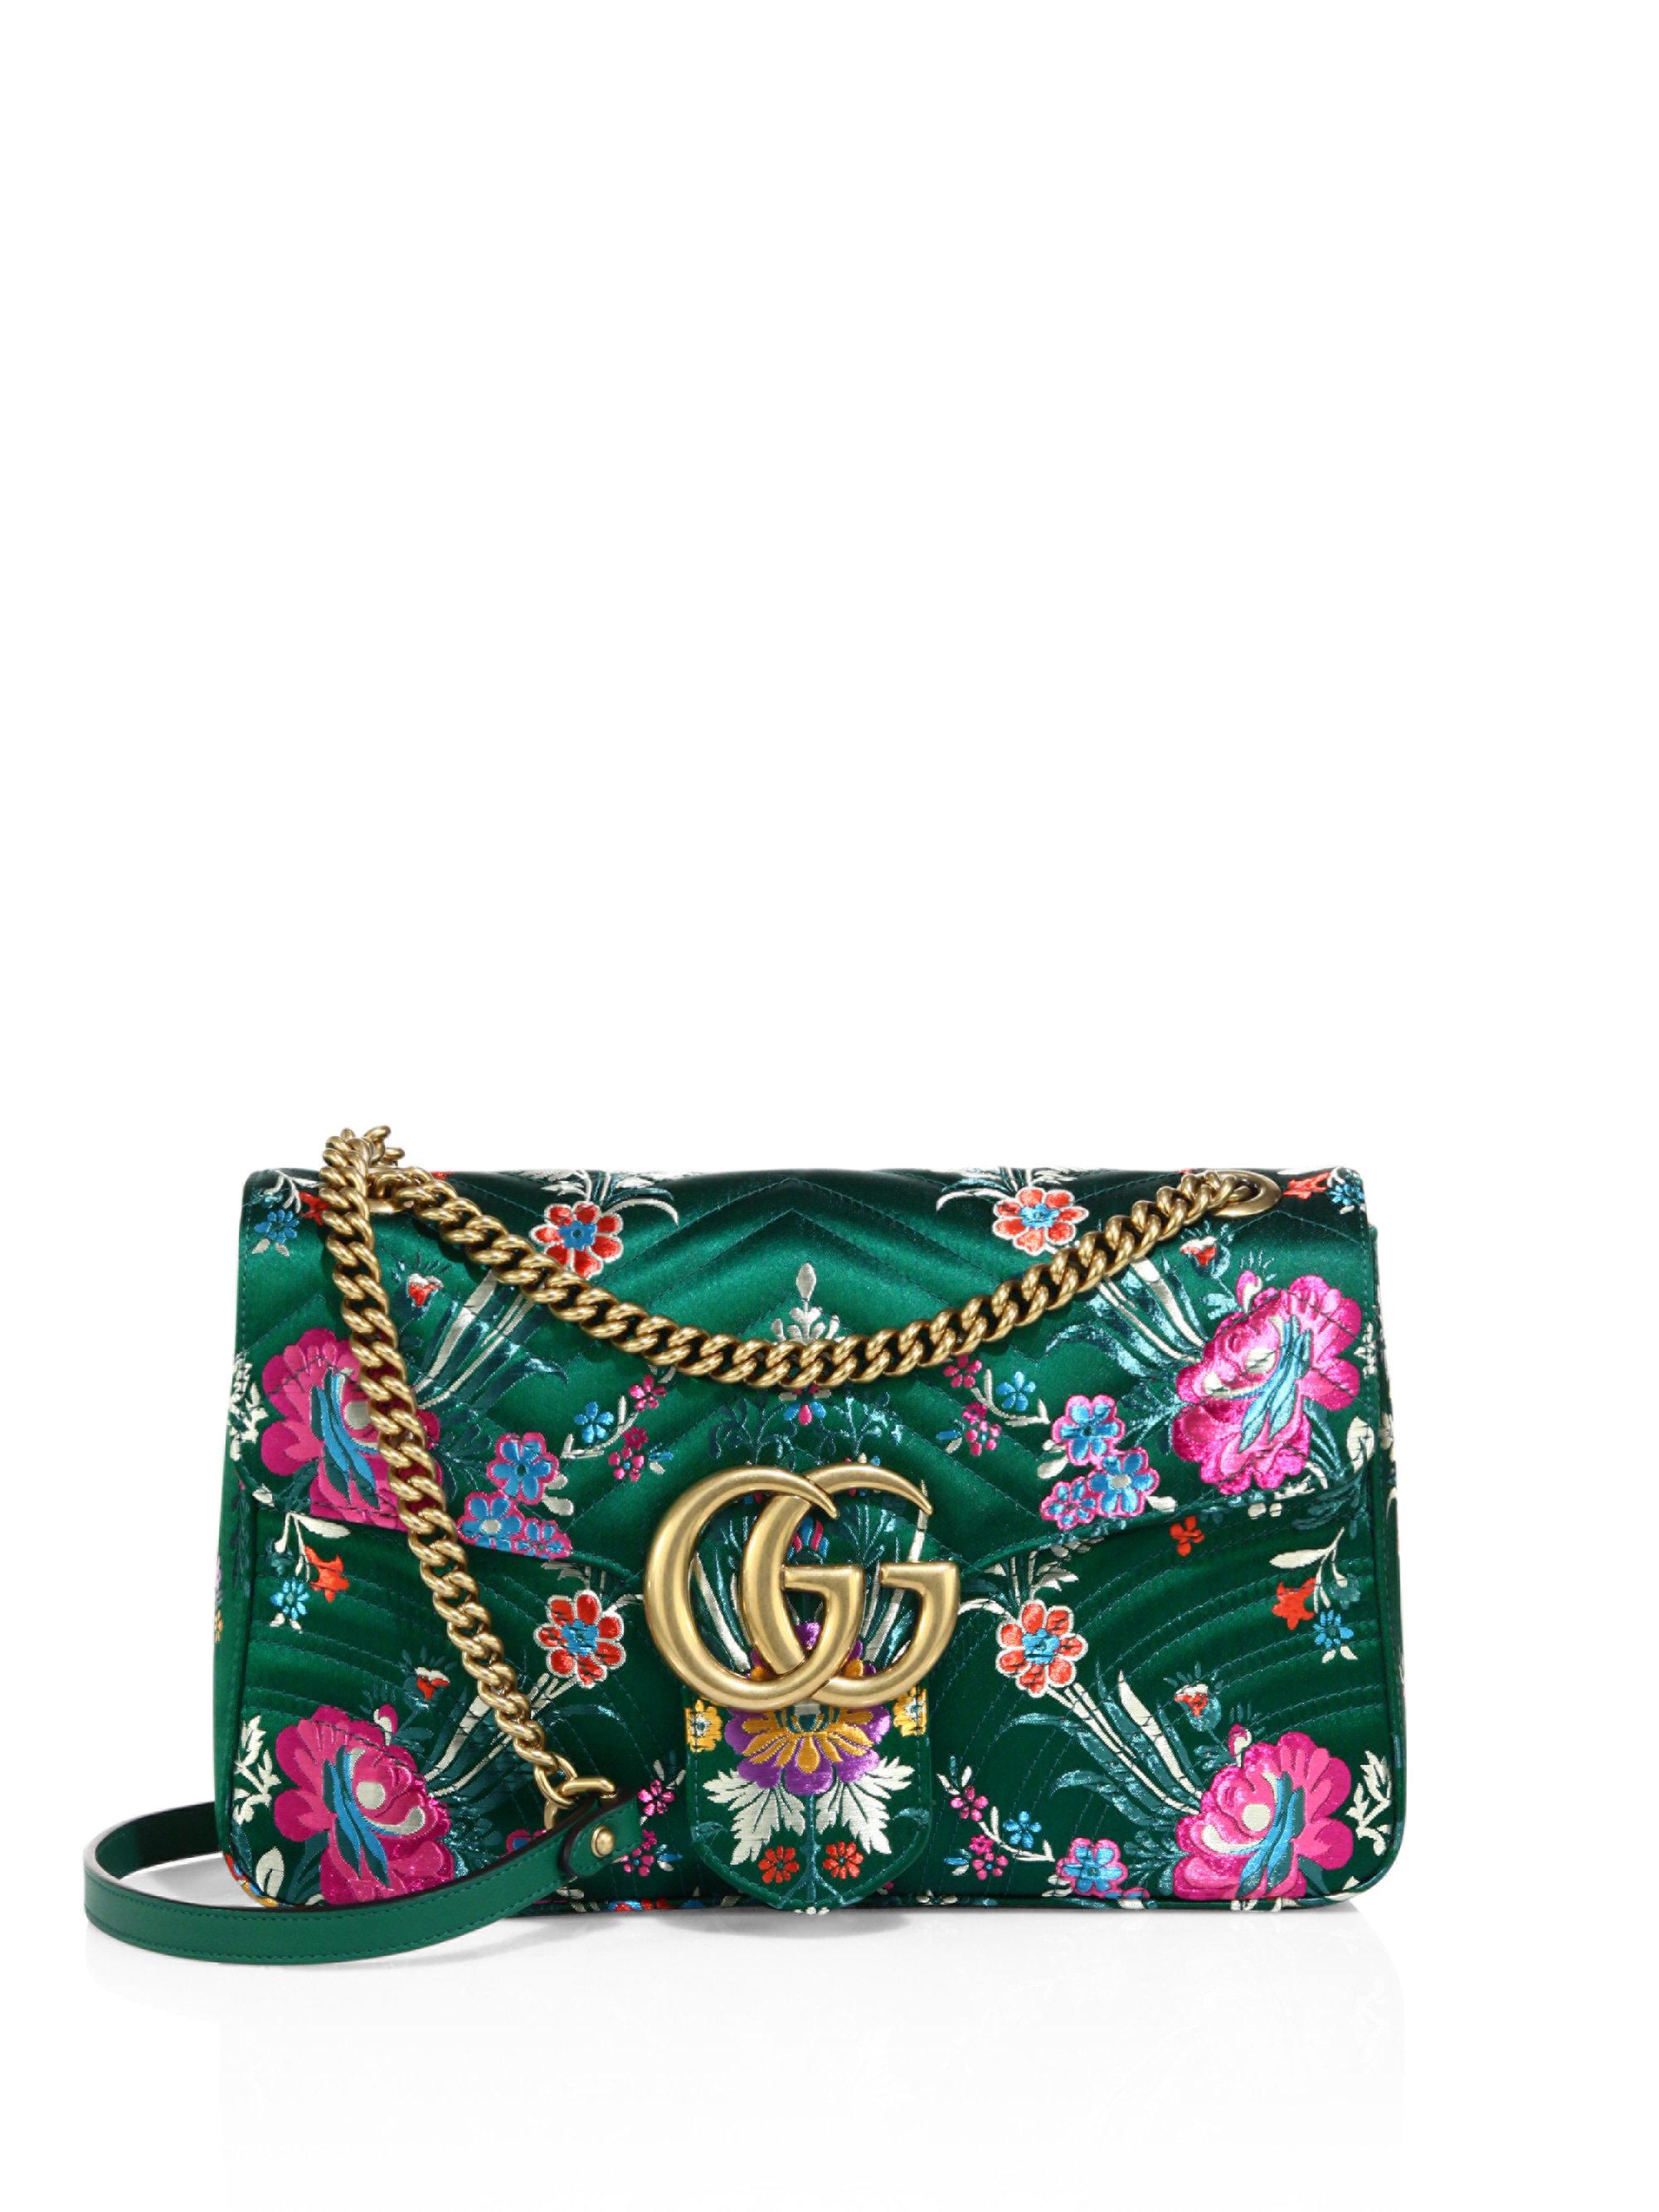 vandrerhjemmet Kæledyr Generel Gucci Suede Small Gg Marmont Matelasse Floral Jacquard Chain Shoulder Bag  in Green - Lyst